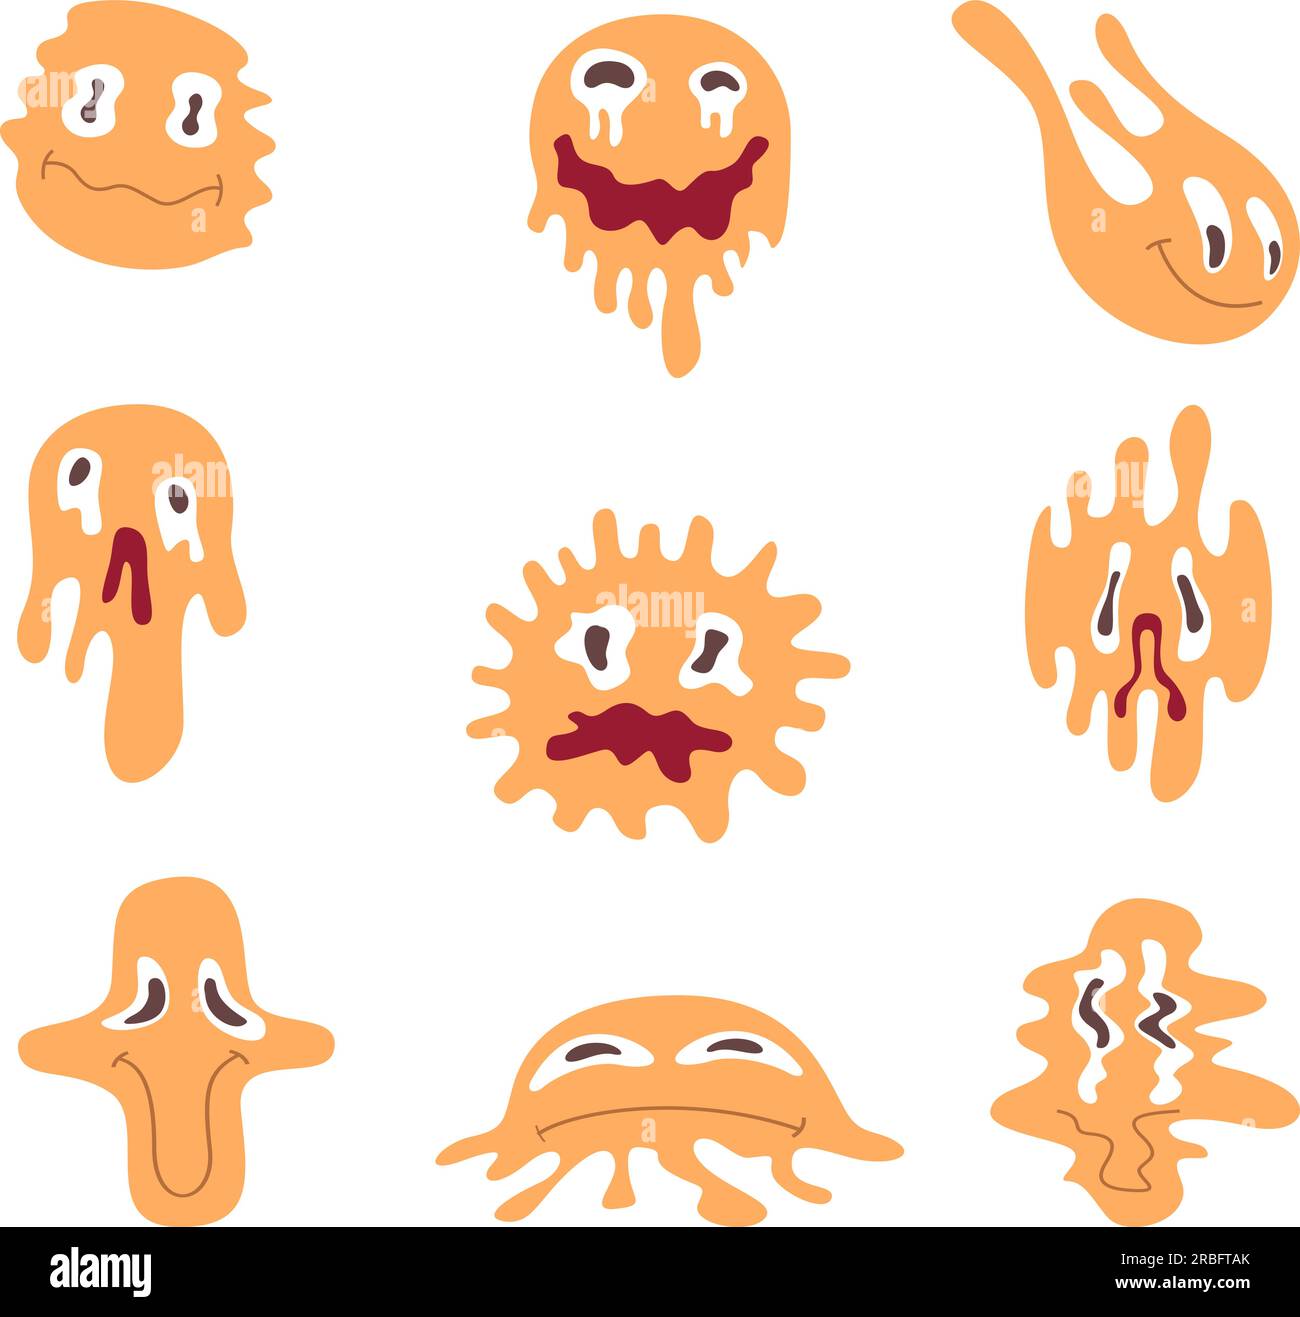 Verzerrtes Lächeln. Lustige fallende Emoticons und flüssige, exakte Vektoren abstrakte Emojis im Cartoon-Stil Stock Vektor